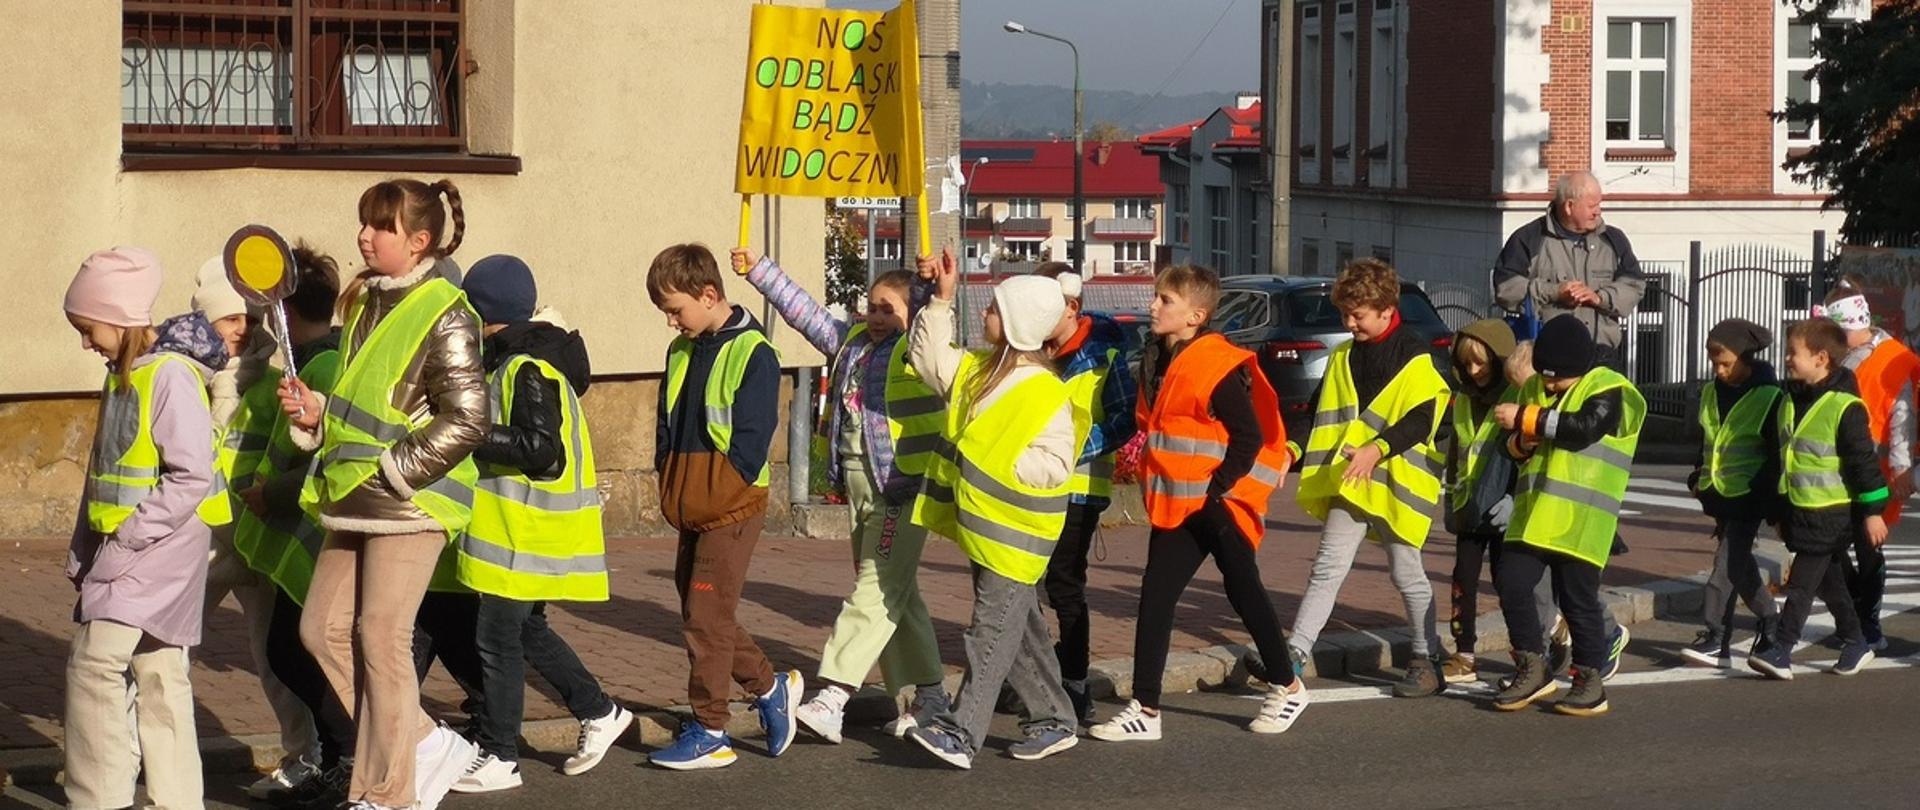 Grupa dzieci ubranych w odblaskowe kamizelki idzie prawą stroną jezdni, niosąc transparent z napisem Noś odblaski bądź widoczny, w tle ściany budynków